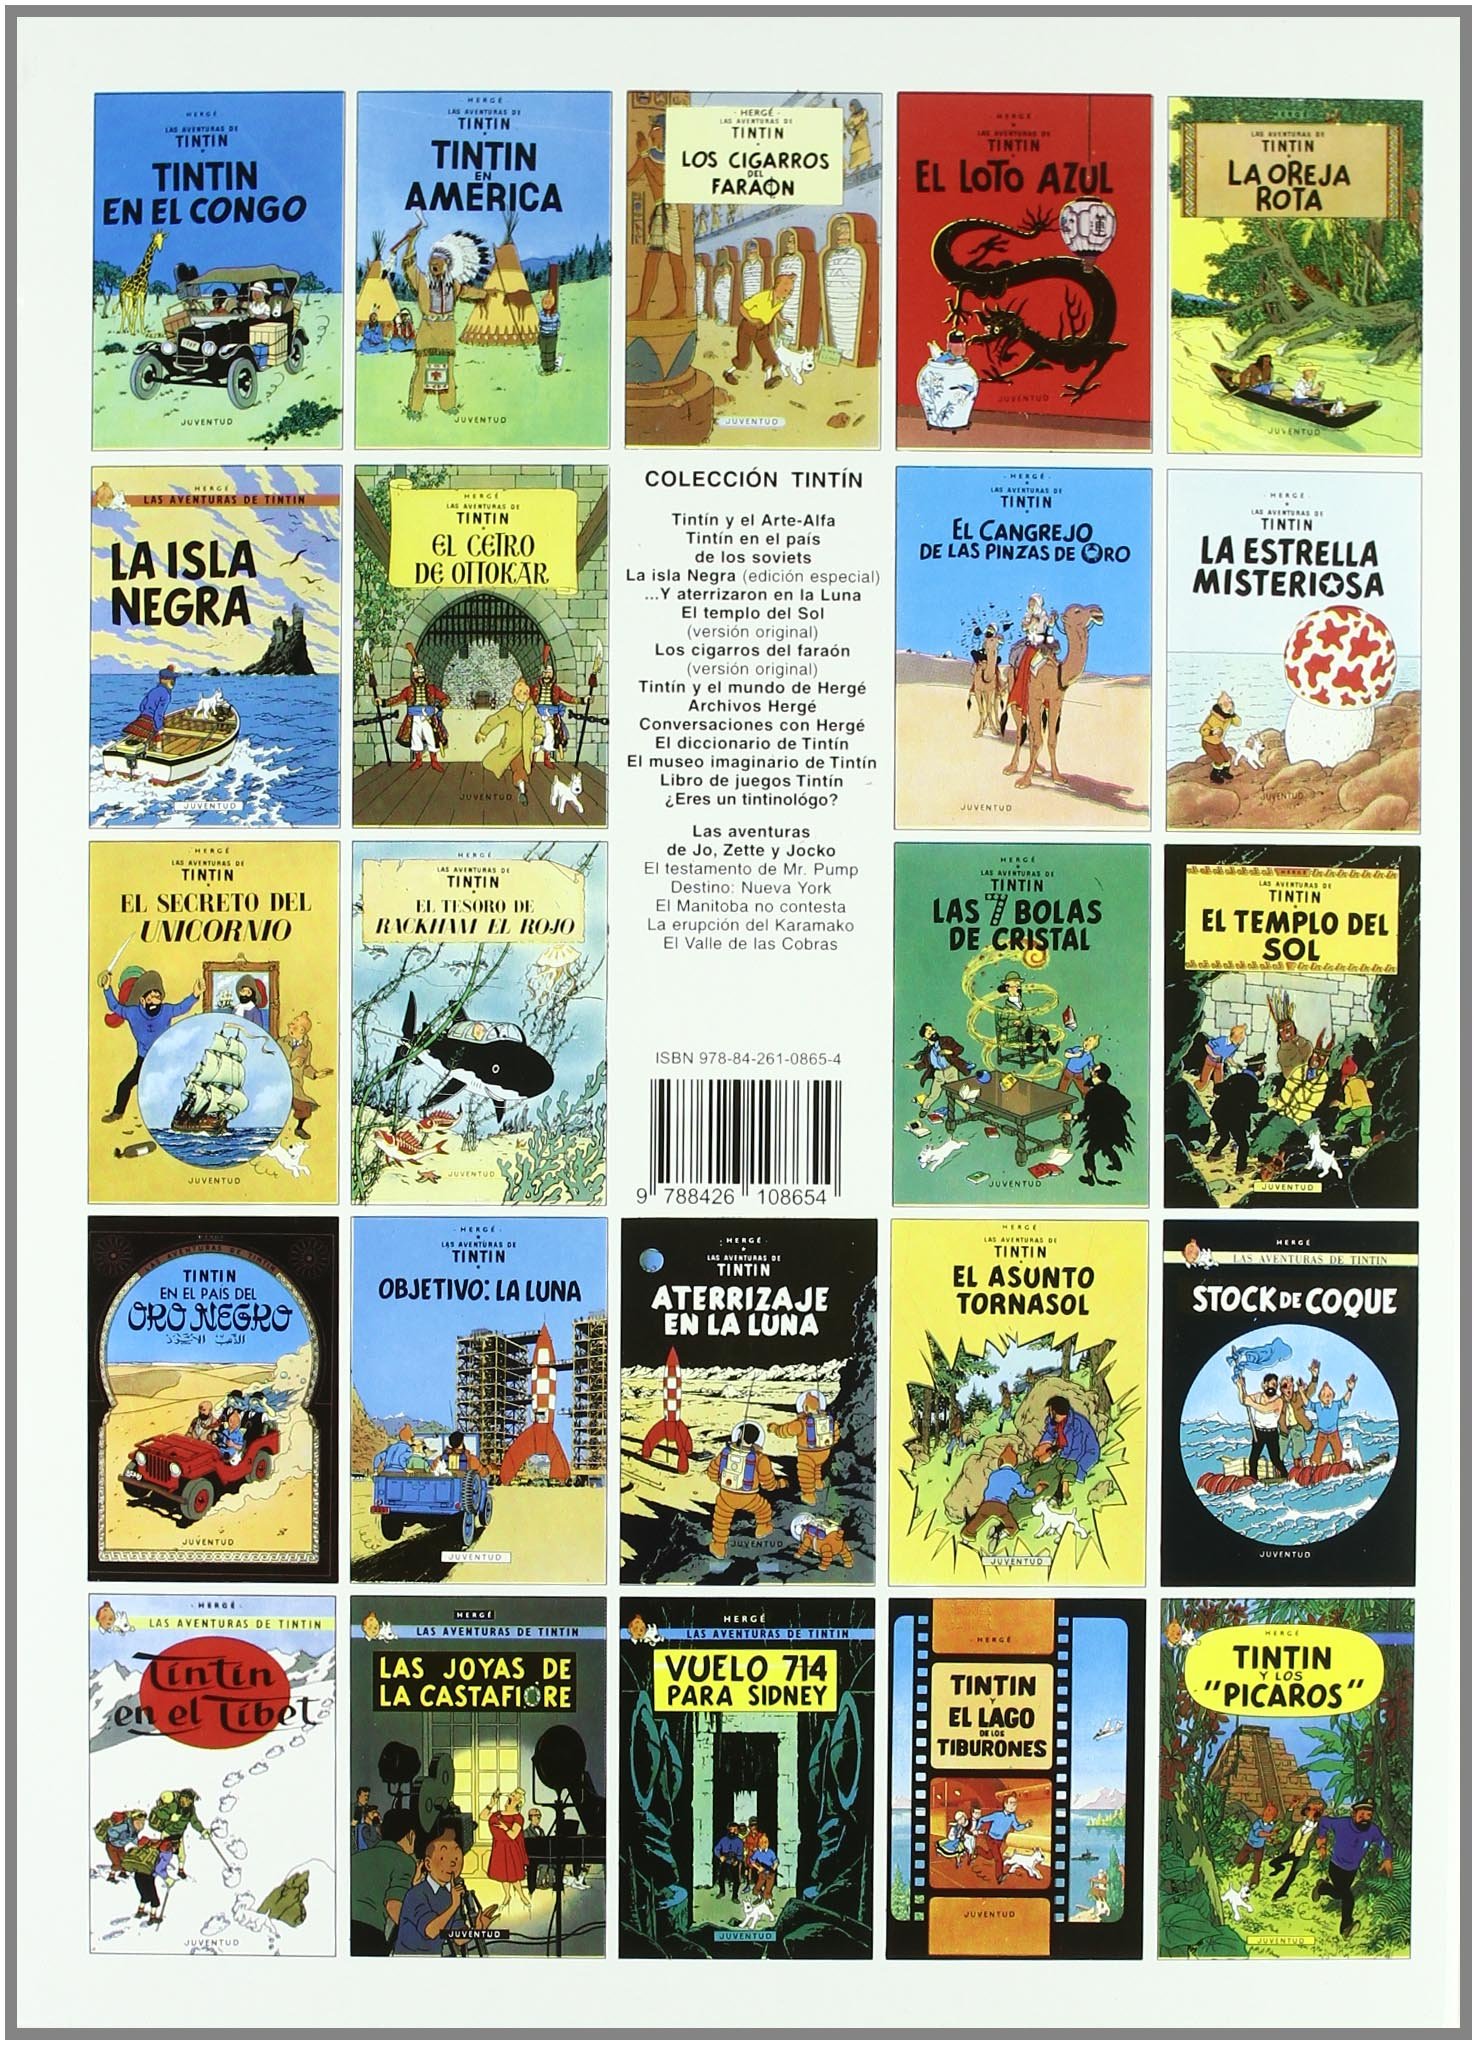 Las Aventuras de Tintin - Objetivo: La Luna (Spanish Edition)